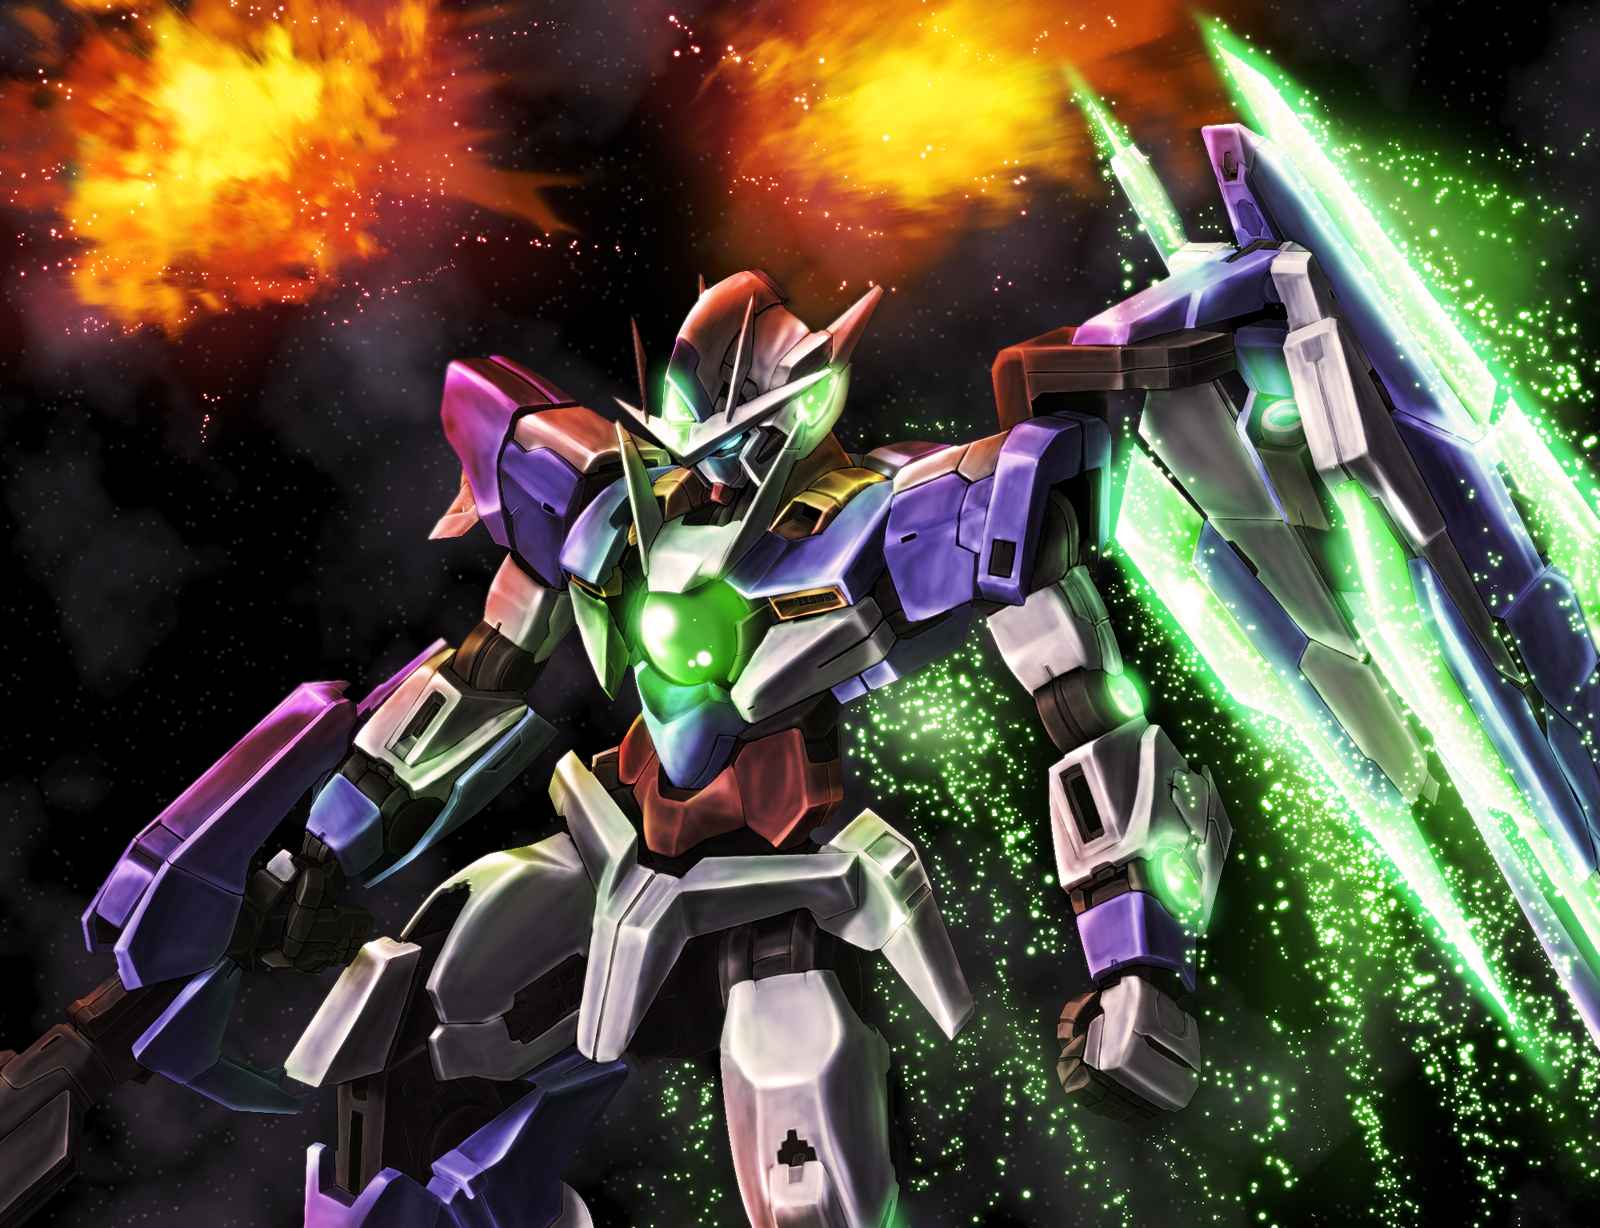 Anime 1600x1228 00 Qan[T] Mobile Suit Gundam 00 Super Robot Taisen anime mechs Gundam artwork digital art fan art